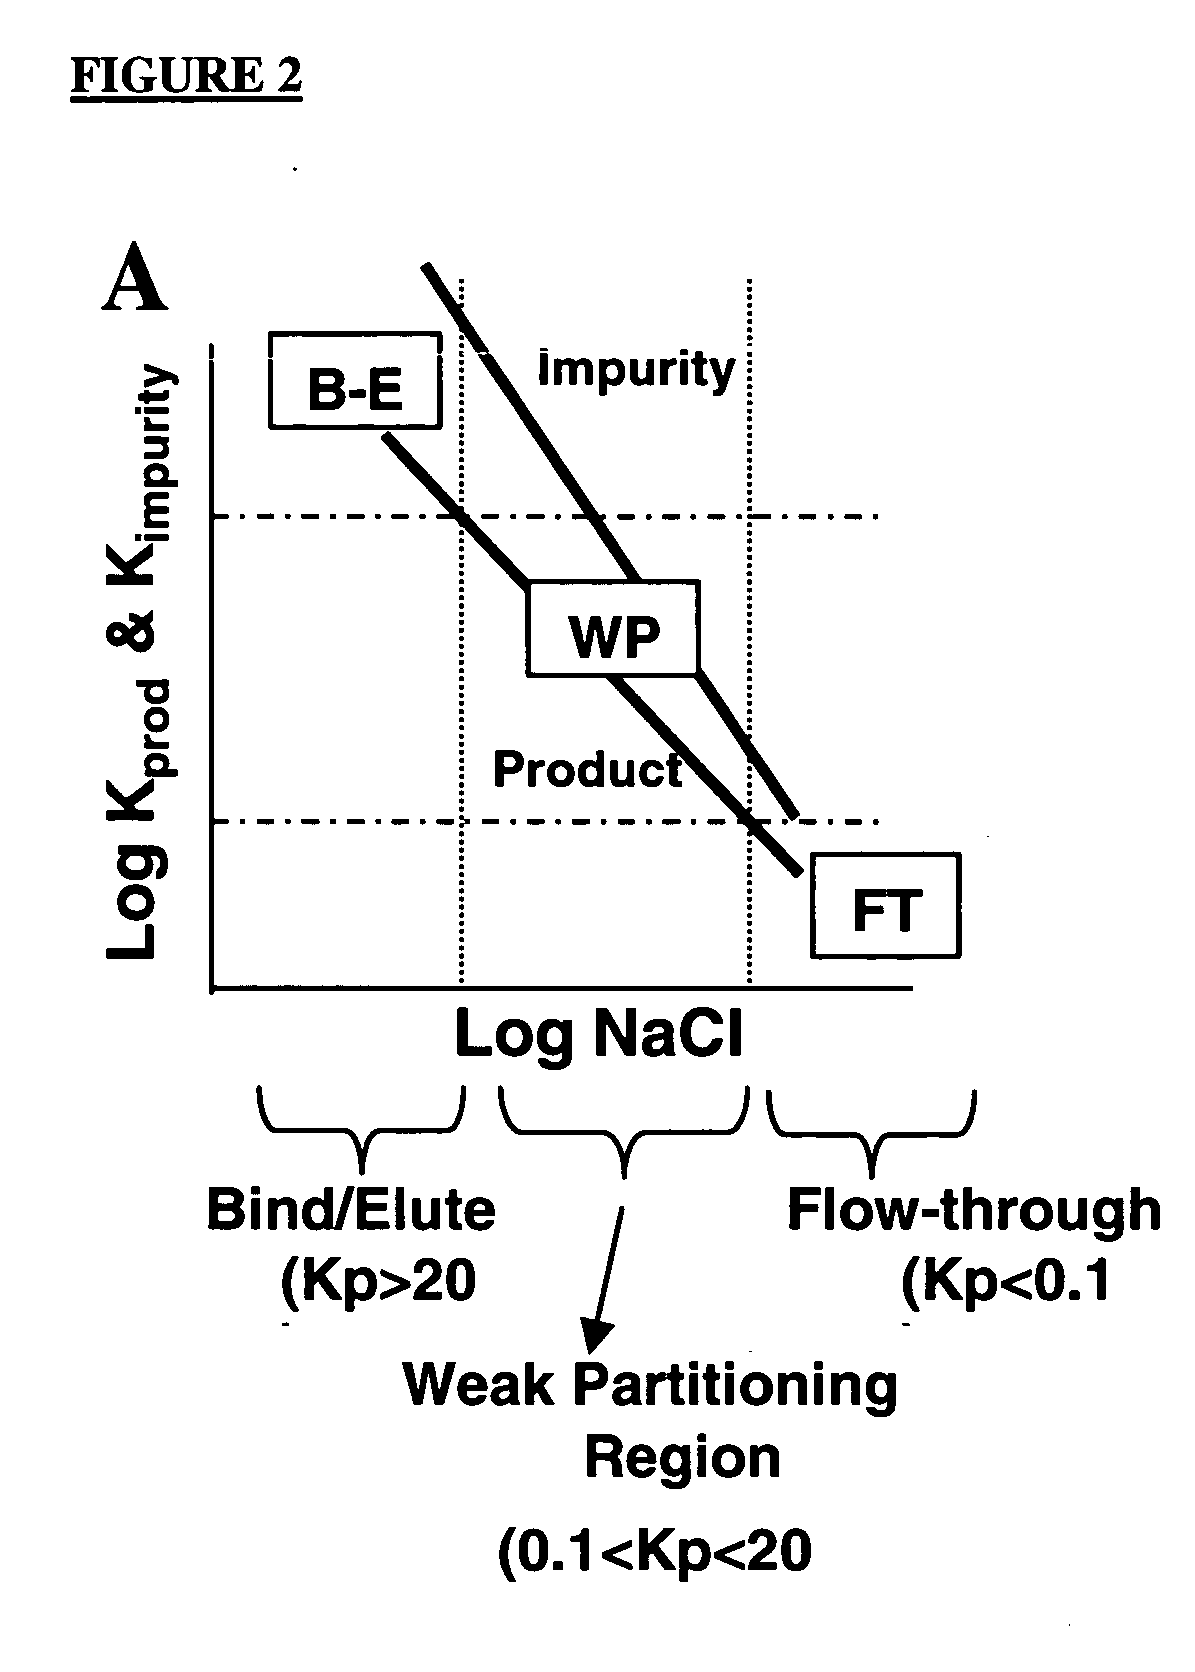 Method of weak partitioning chromatography